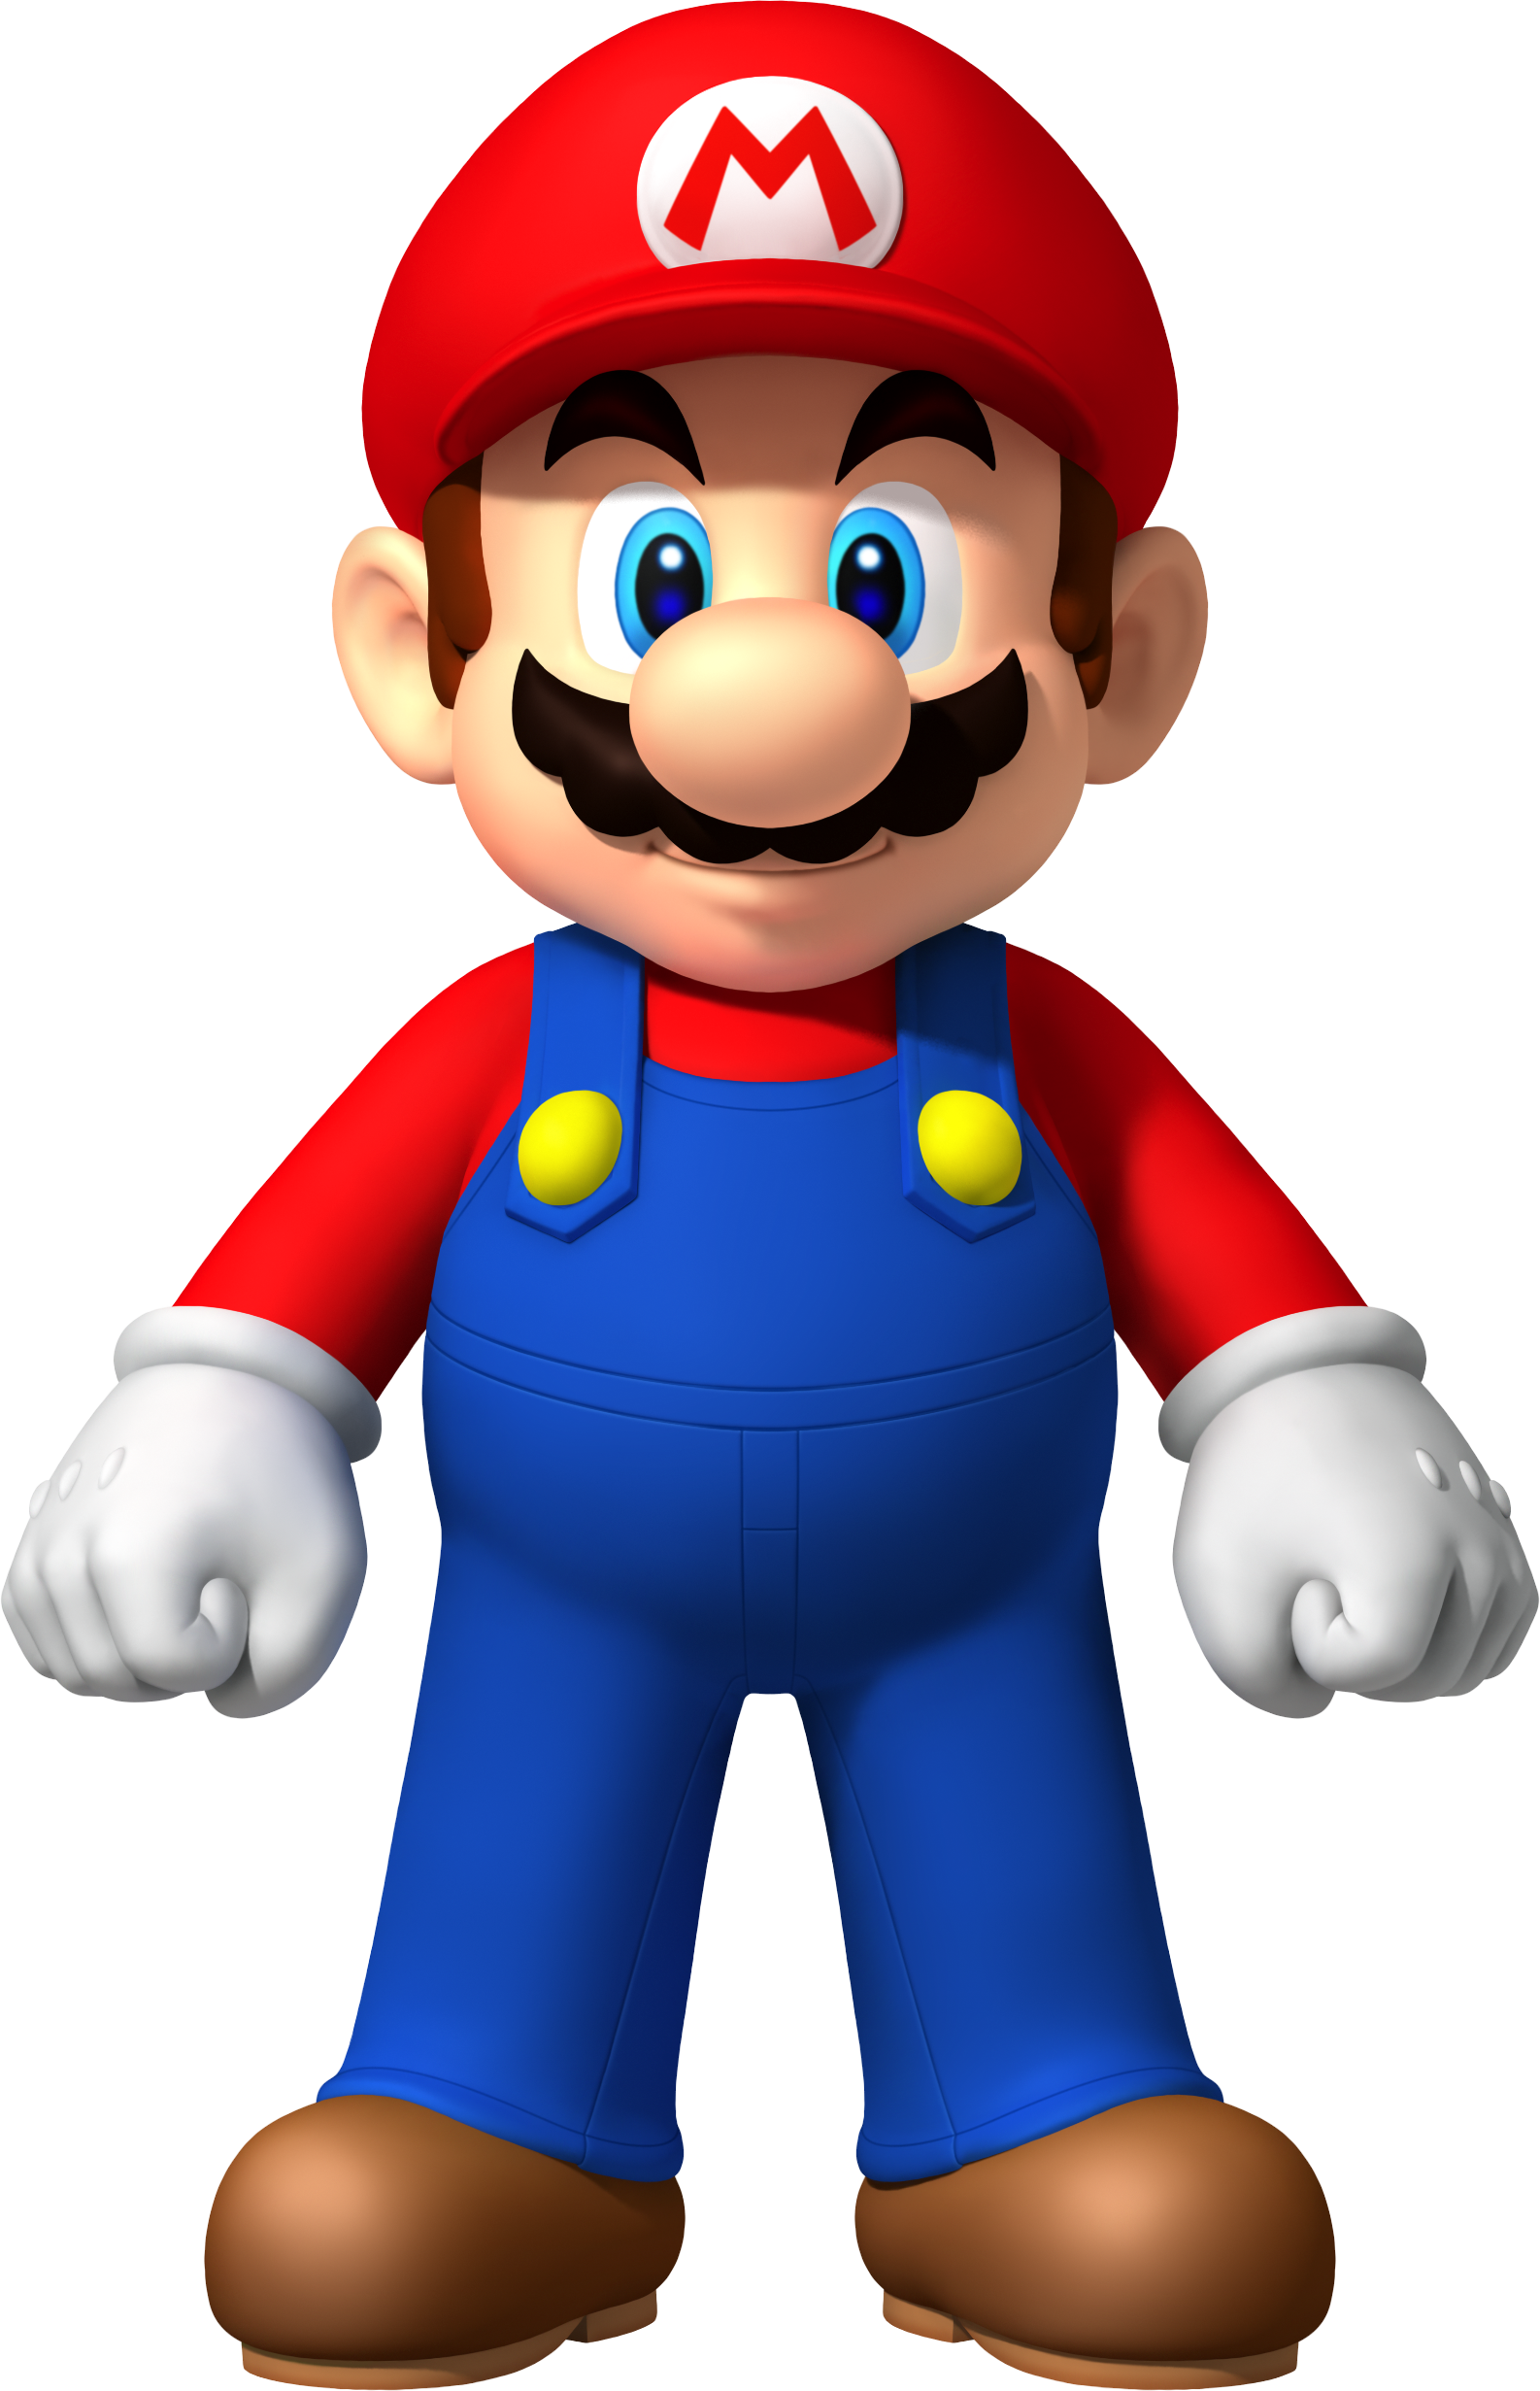 Big Mario Super Bros Photo